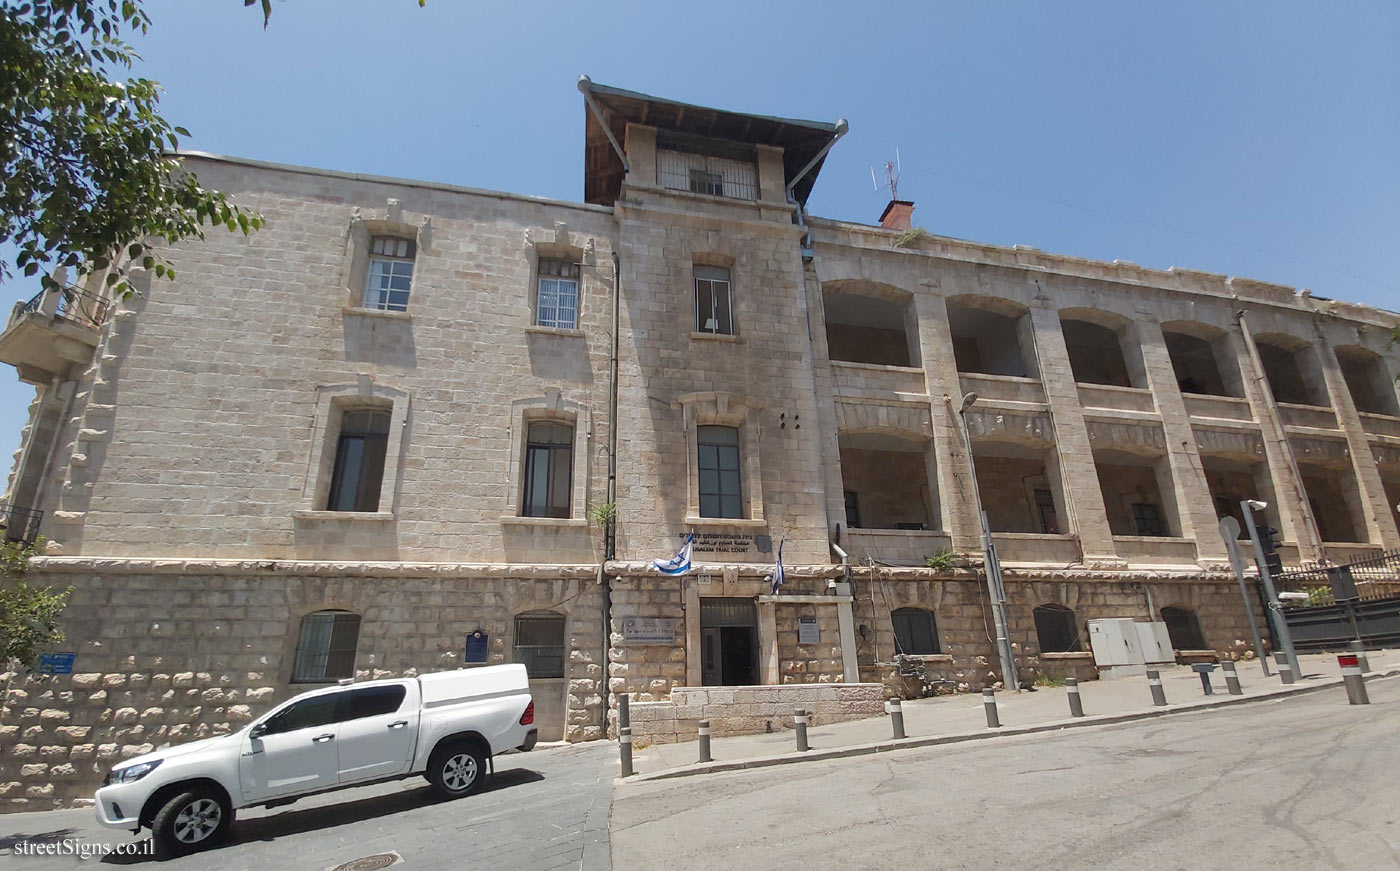 Jerusalem - The Built Heritage - Nikolai Pilgrims Hostel - Shne’ur Kheshin St 1, Jerusalem, Israel